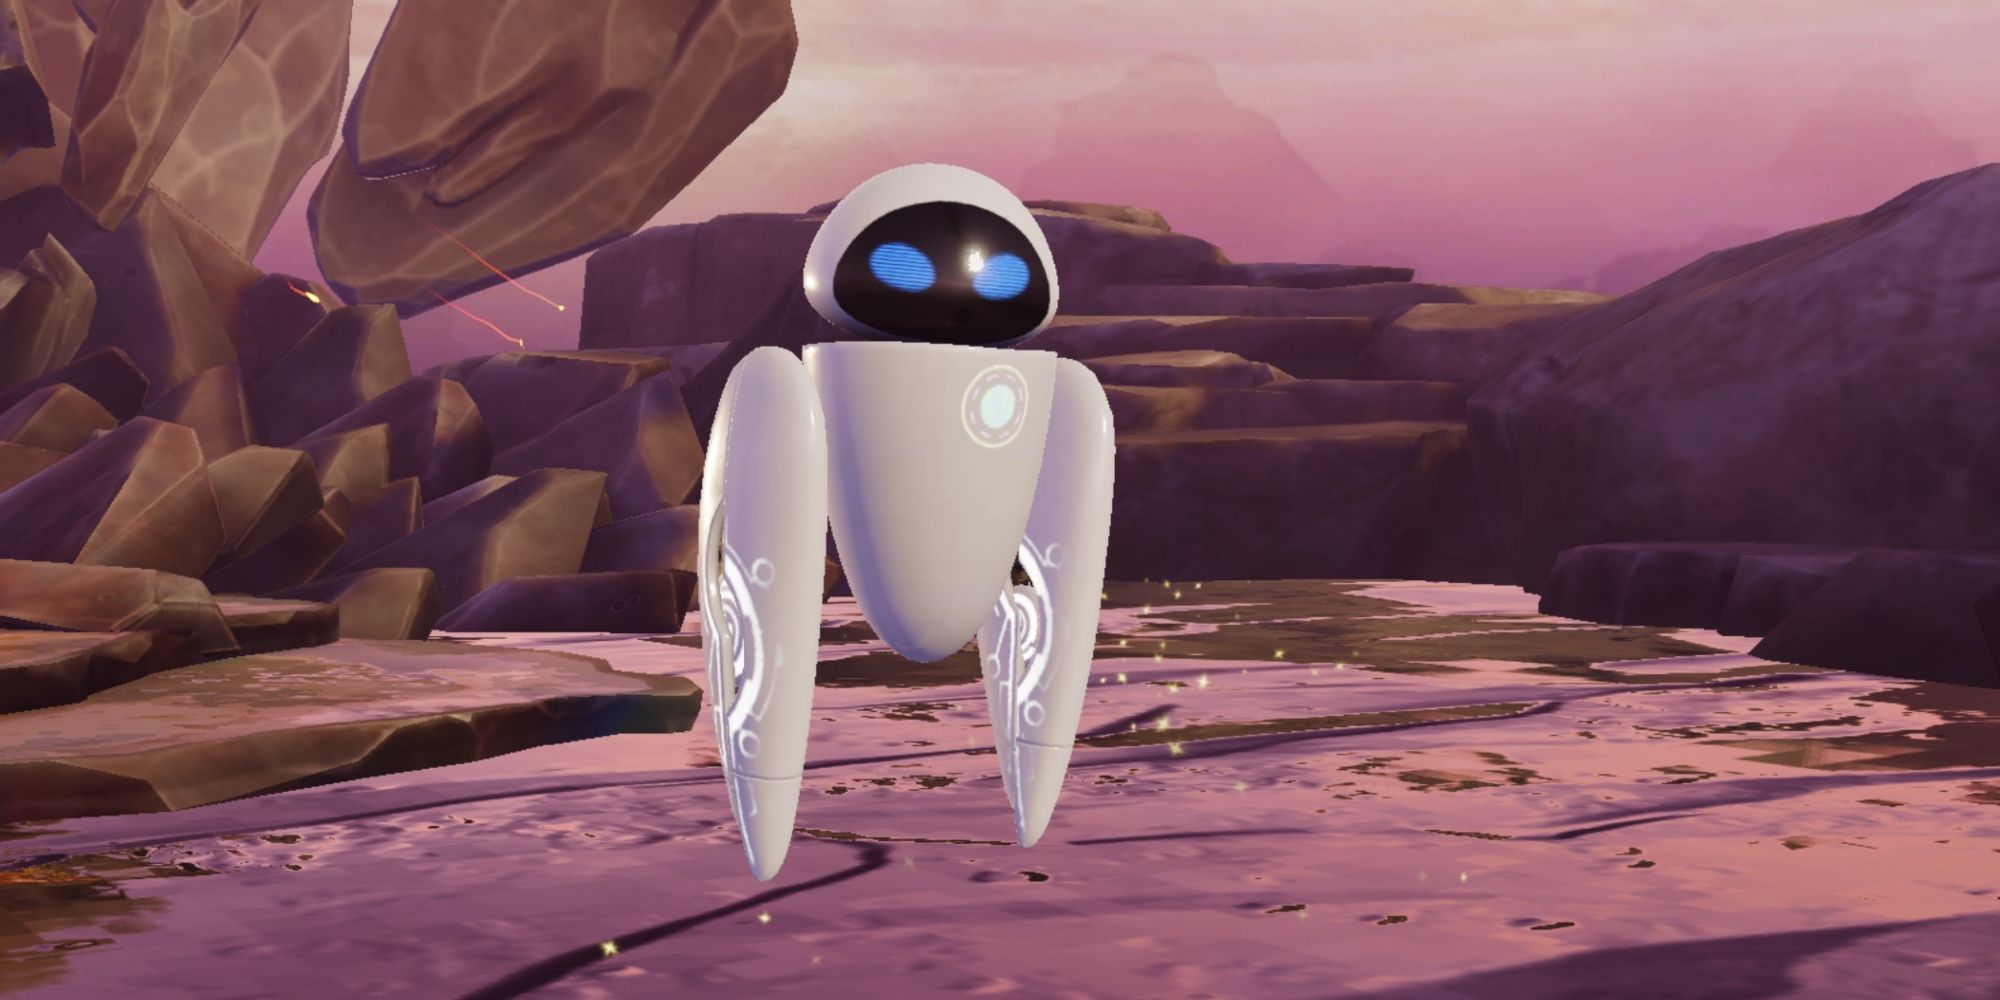 Eve the robot in Disney's Mirrorverse